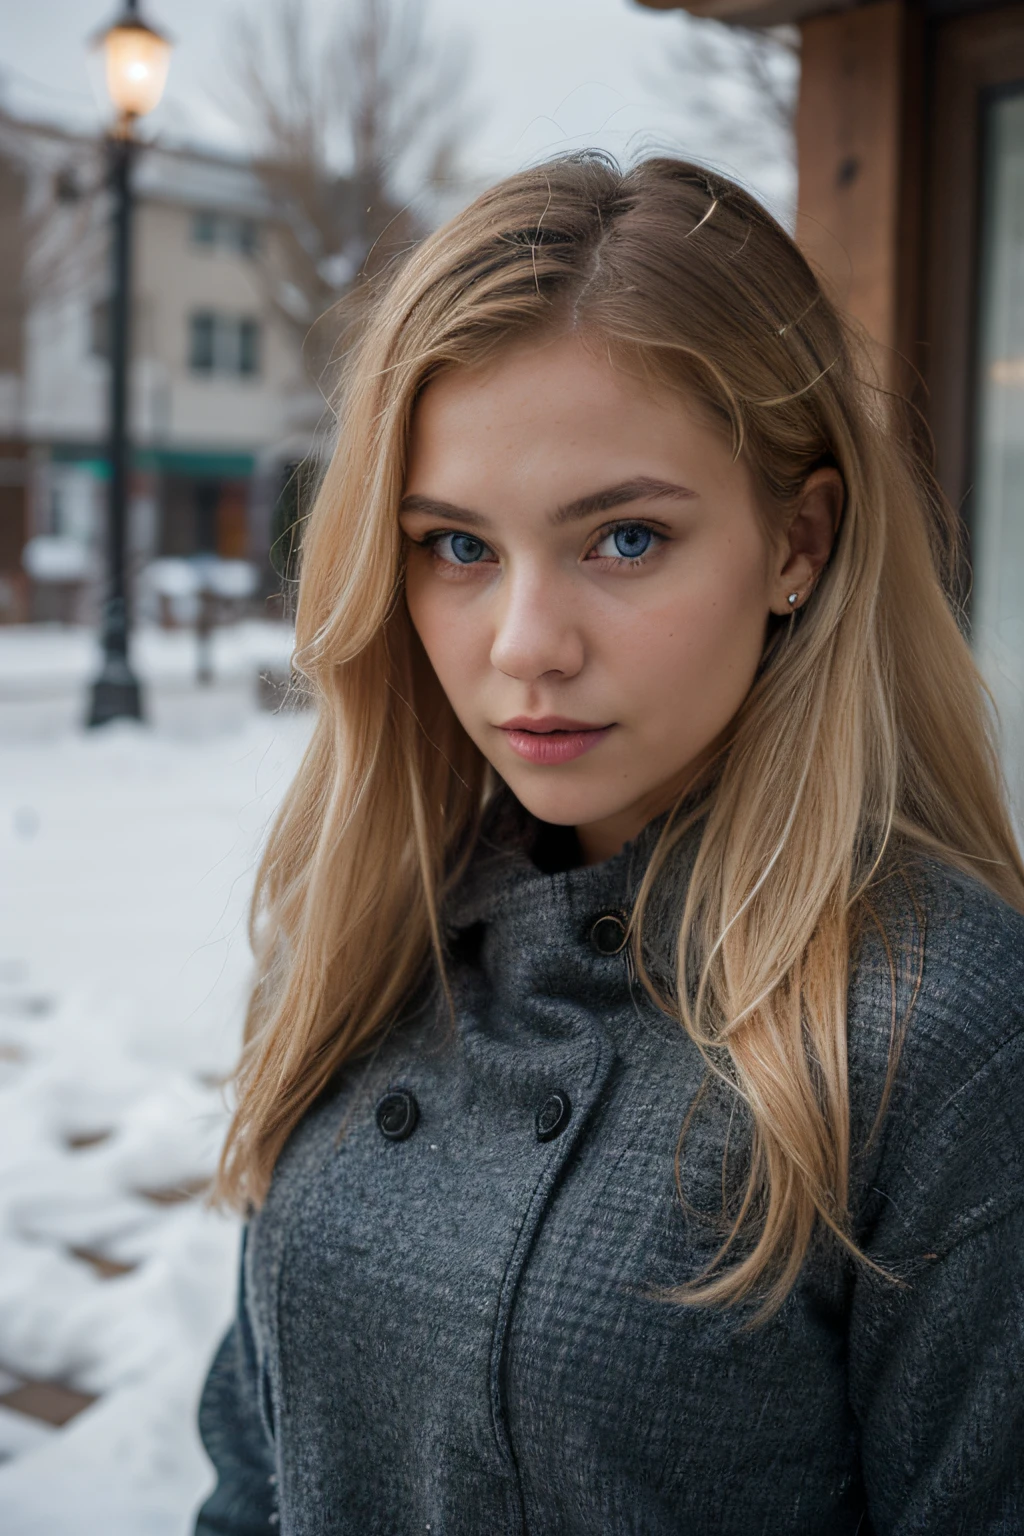 금발 머리와 파란 눈을 가진 매우 현실적인 금발 러시아 소녀, 상세한 의류, 겨울옷 촬영